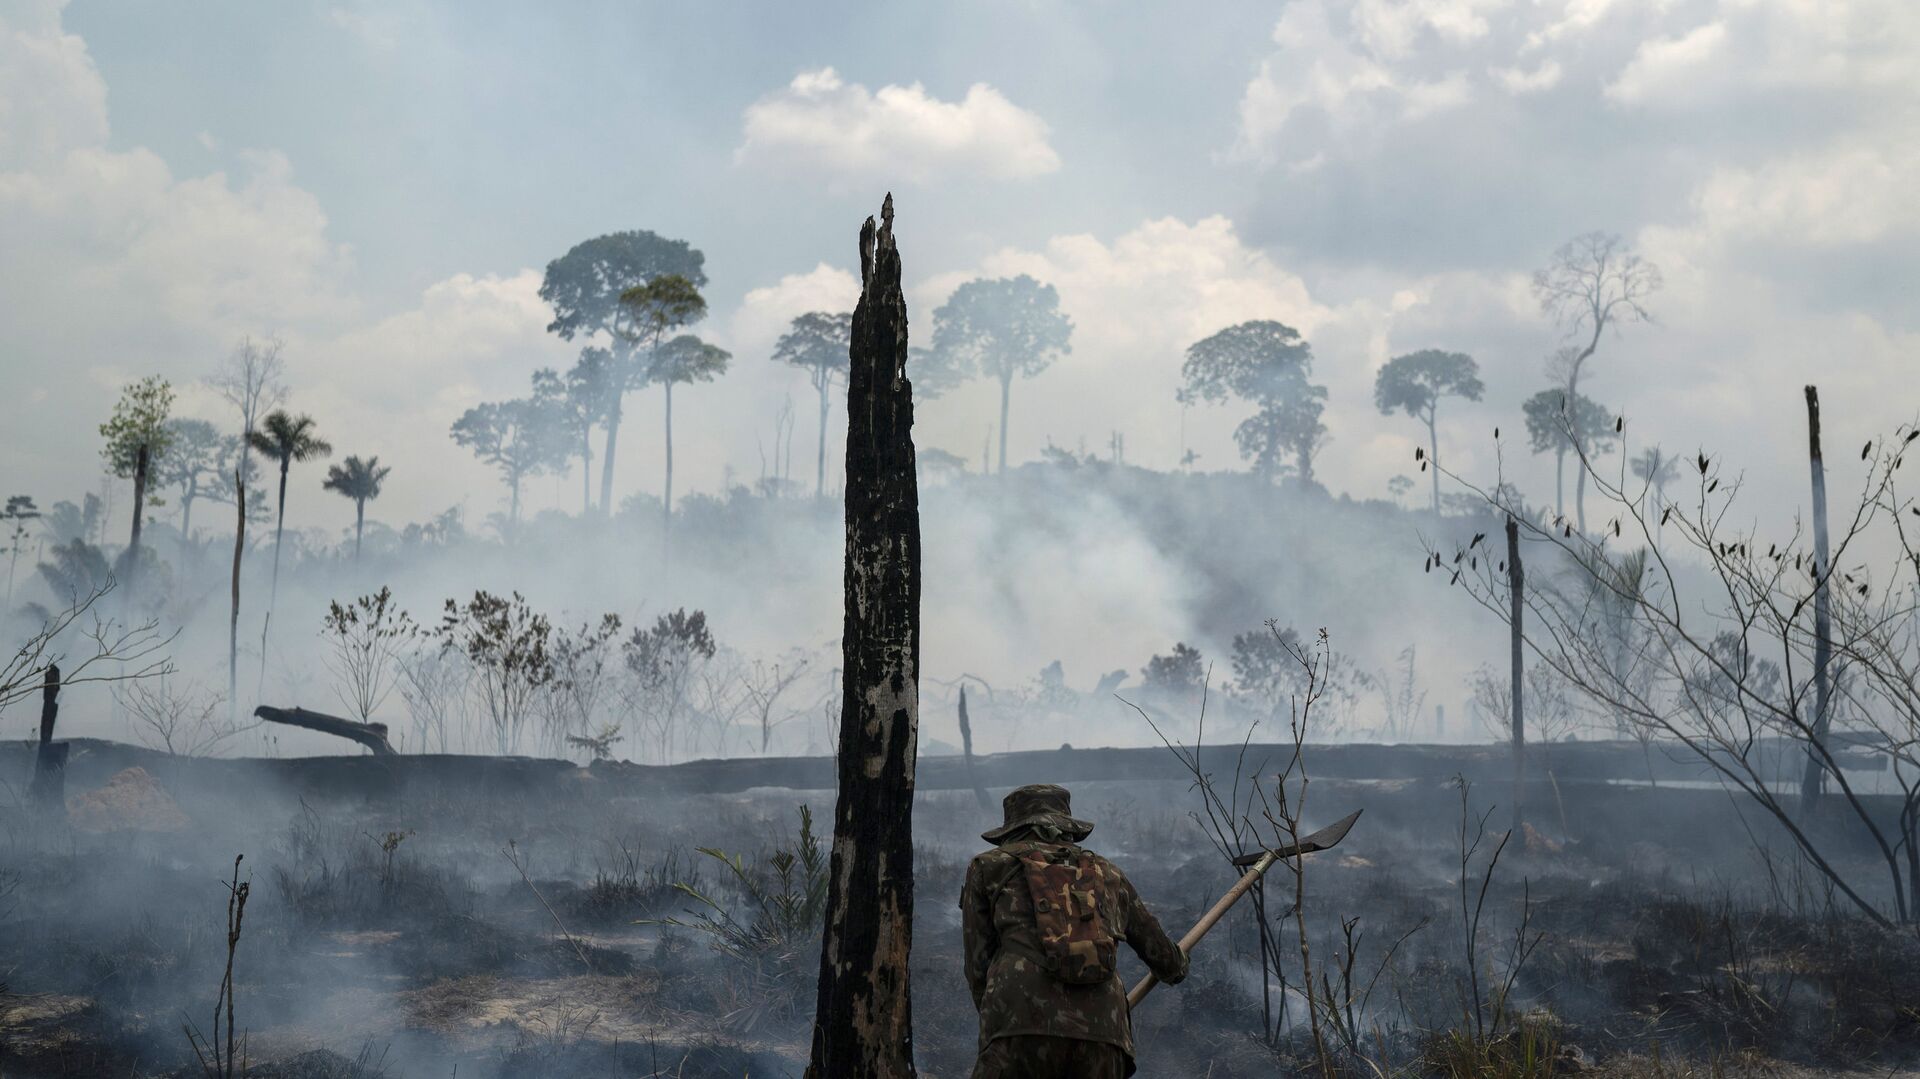 Амазонија у пламену - највећи пожари од 2010. захватили су ову регију у лето ове године, што је подстакло забринутост везано за климатске промене. - Sputnik Србија, 1920, 18.04.2021